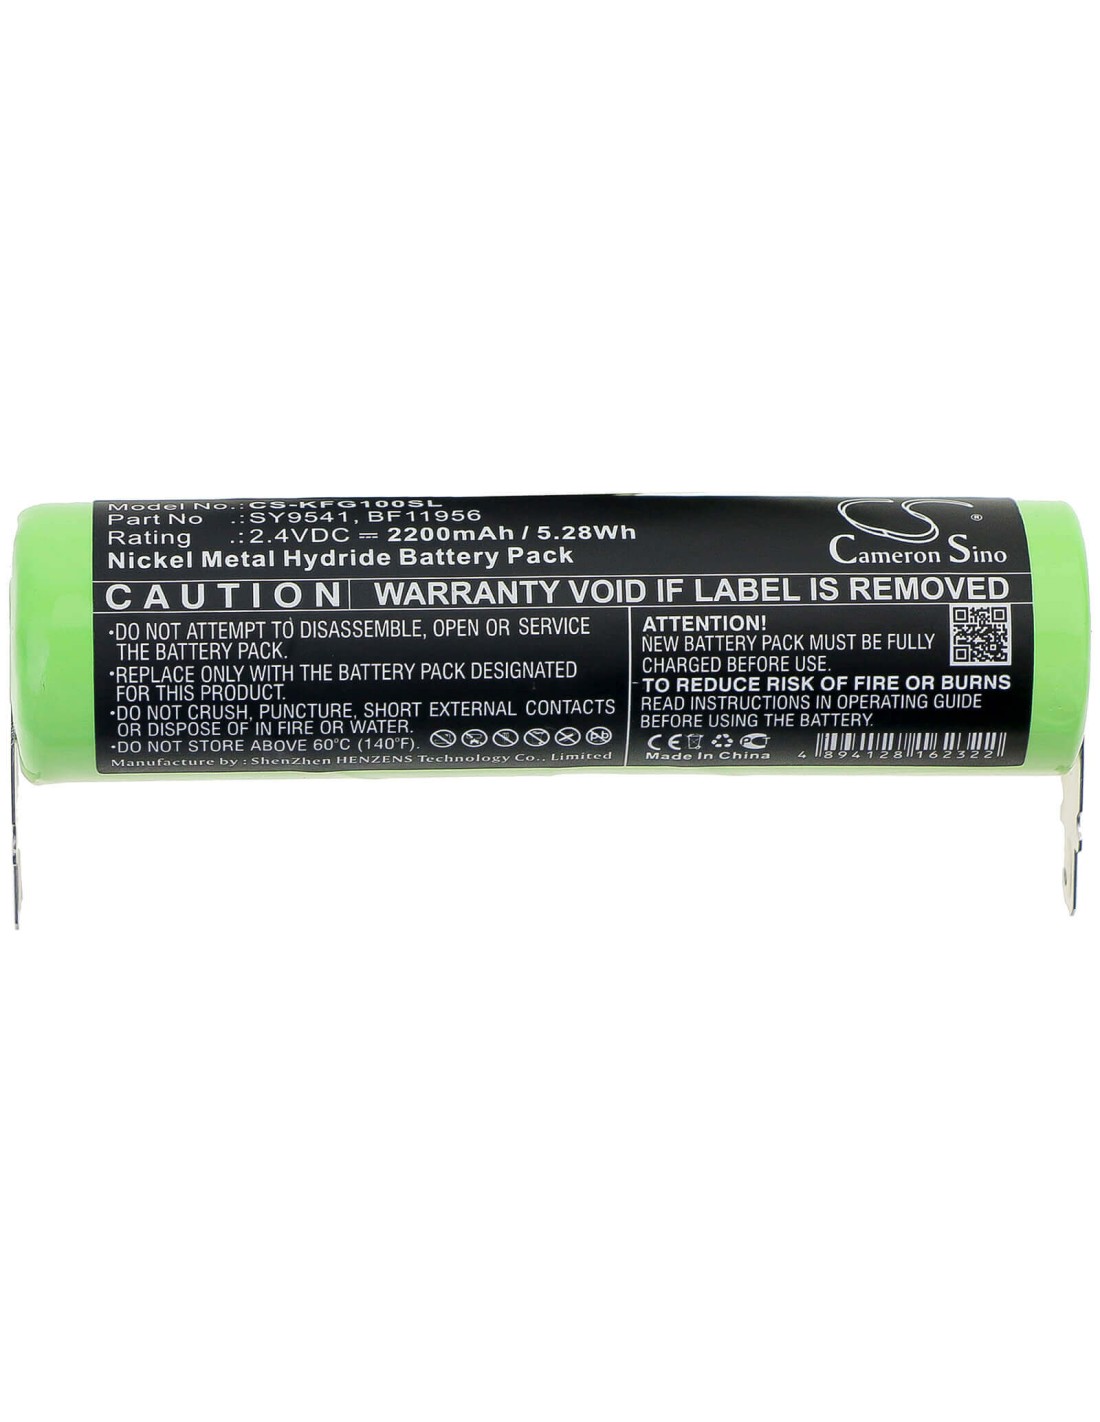 Battery for Kenwood, Fg-100, Fg150, Fg-150 2.4V, 2200mAh - 5.28Wh